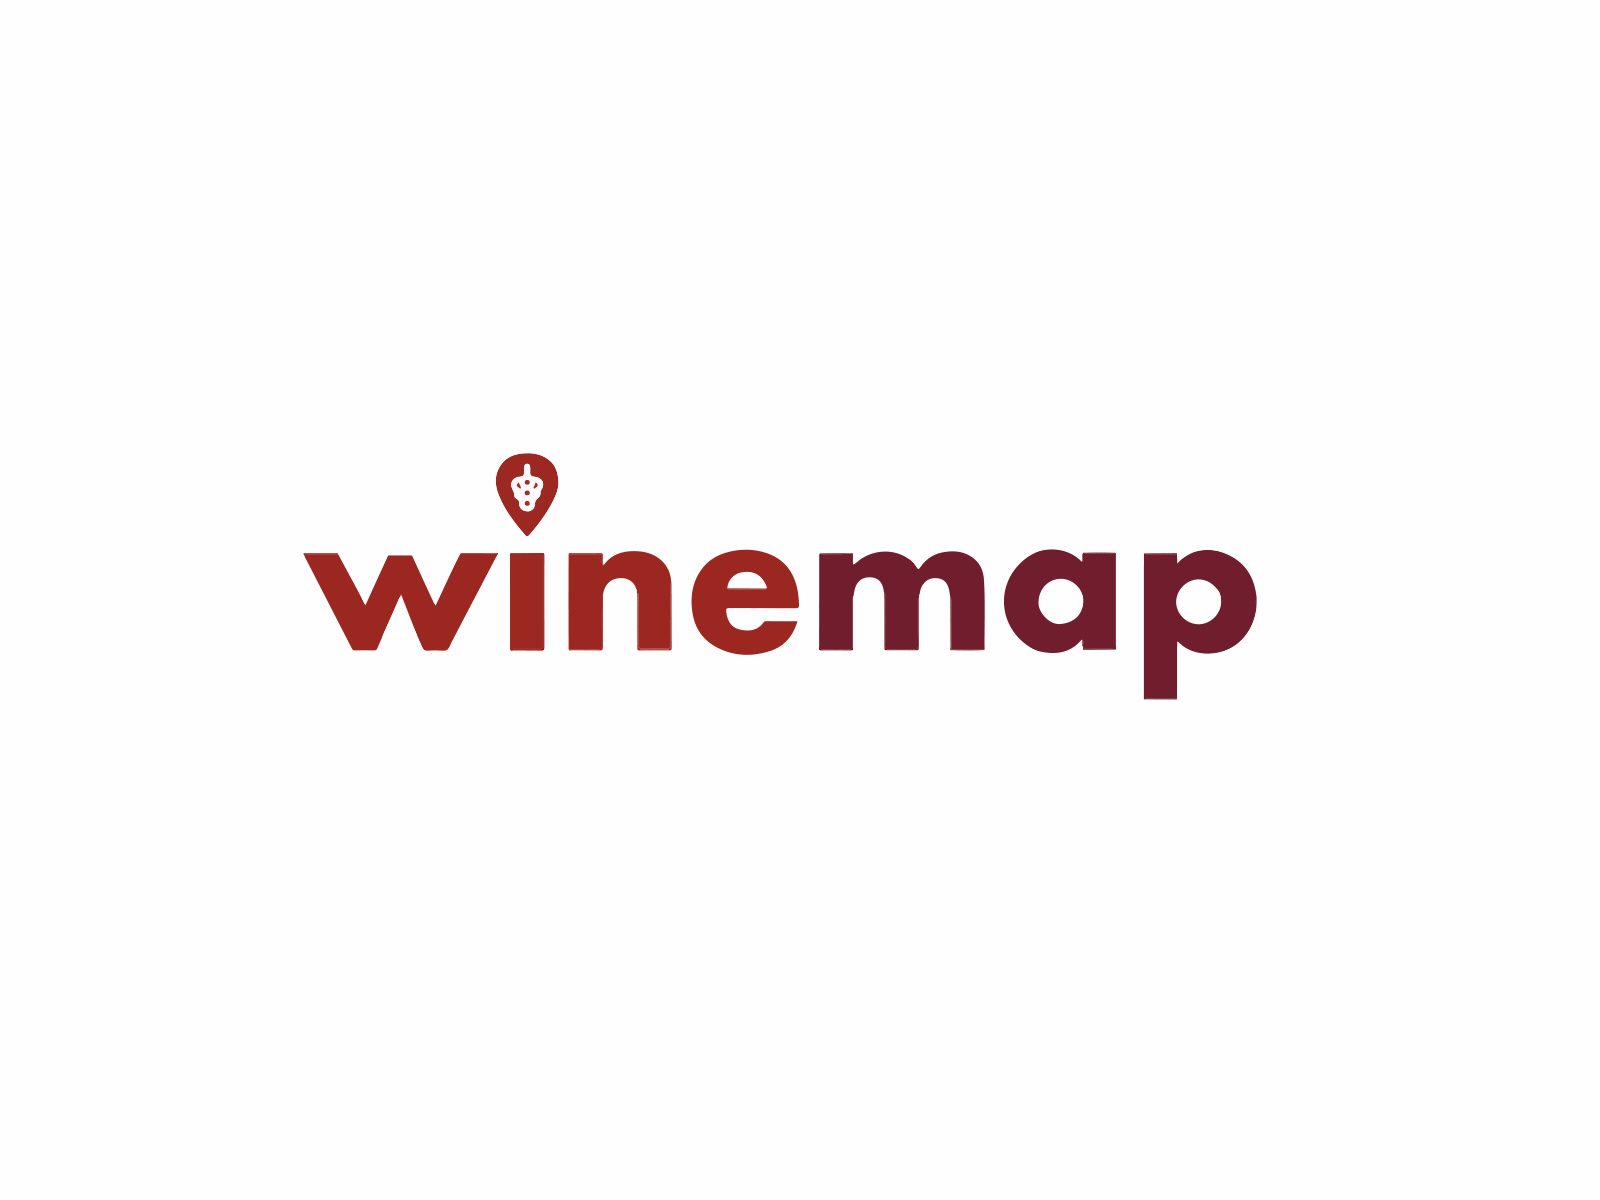 Winemap logo animation